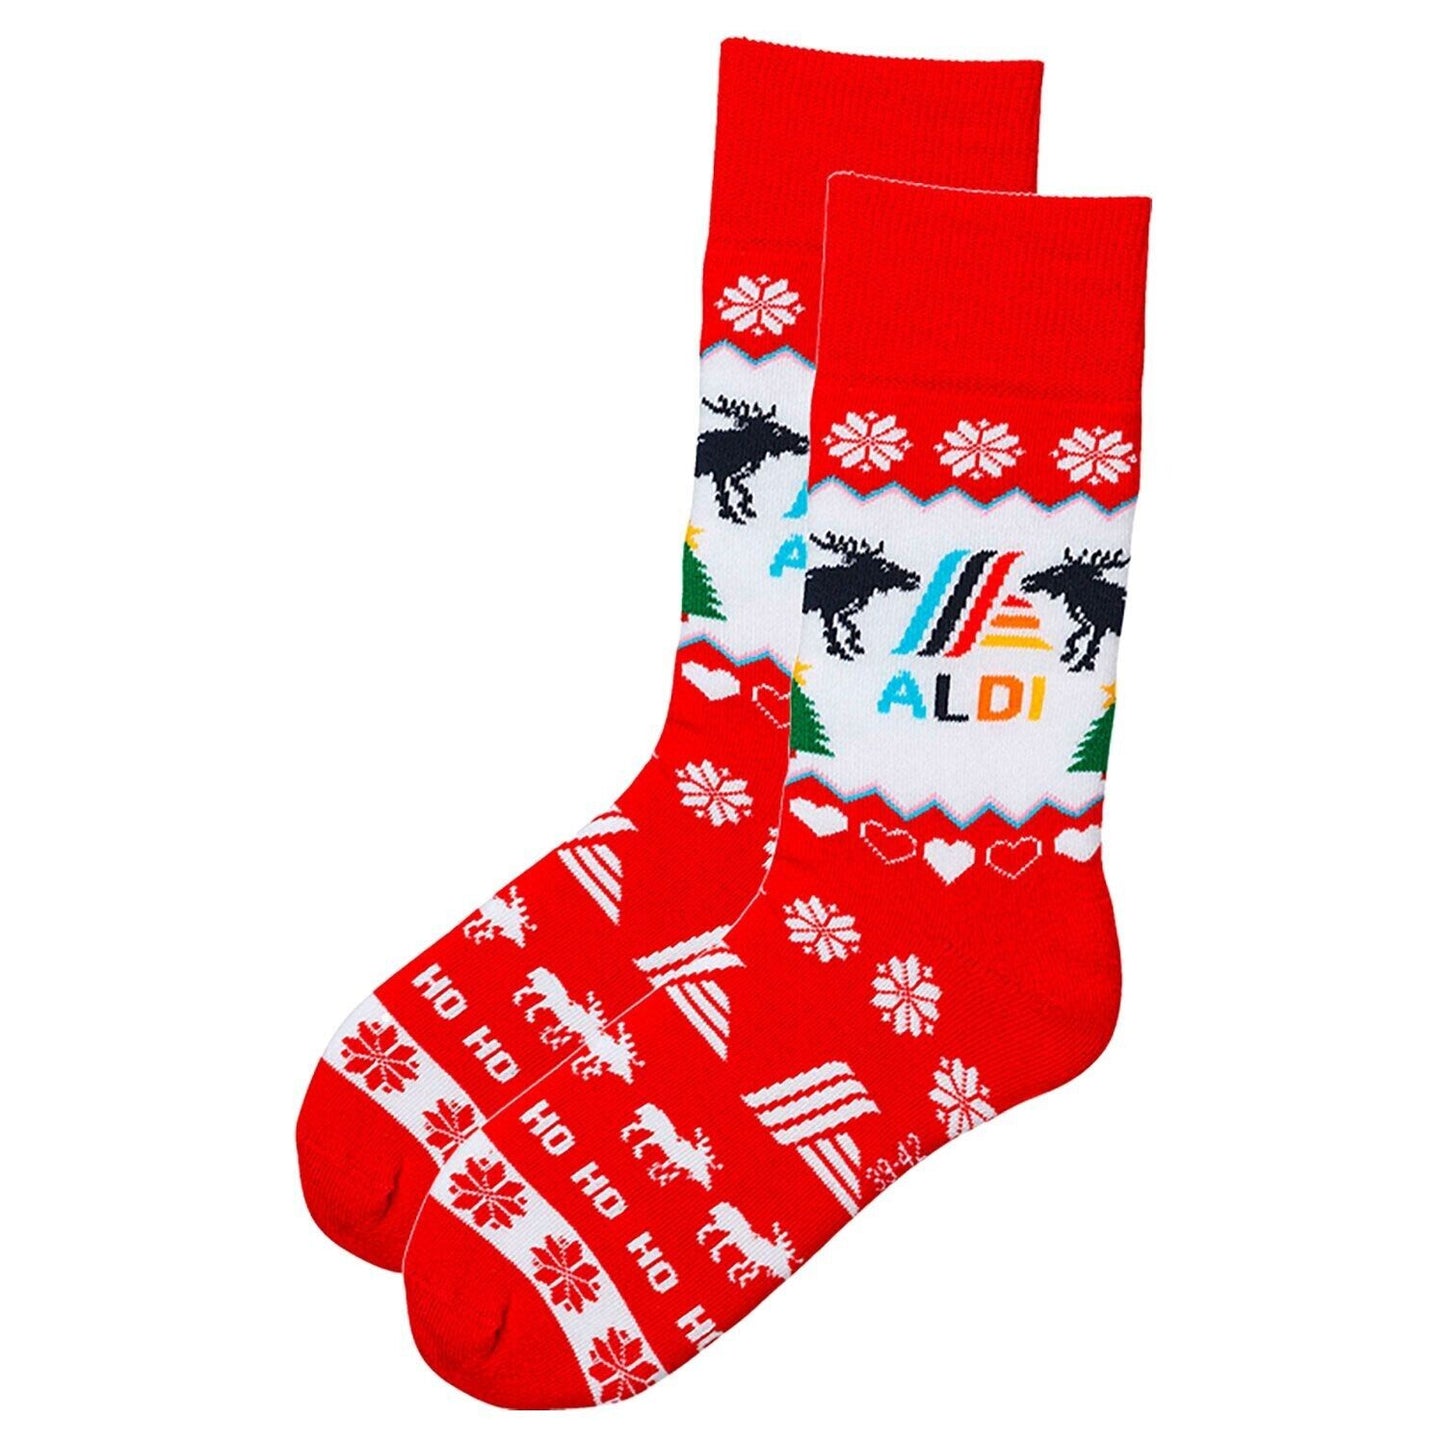 Aldimania Socken Aldi Weihnachten Christmas Limited Edition 3.0 Gr. 39-42 43-46